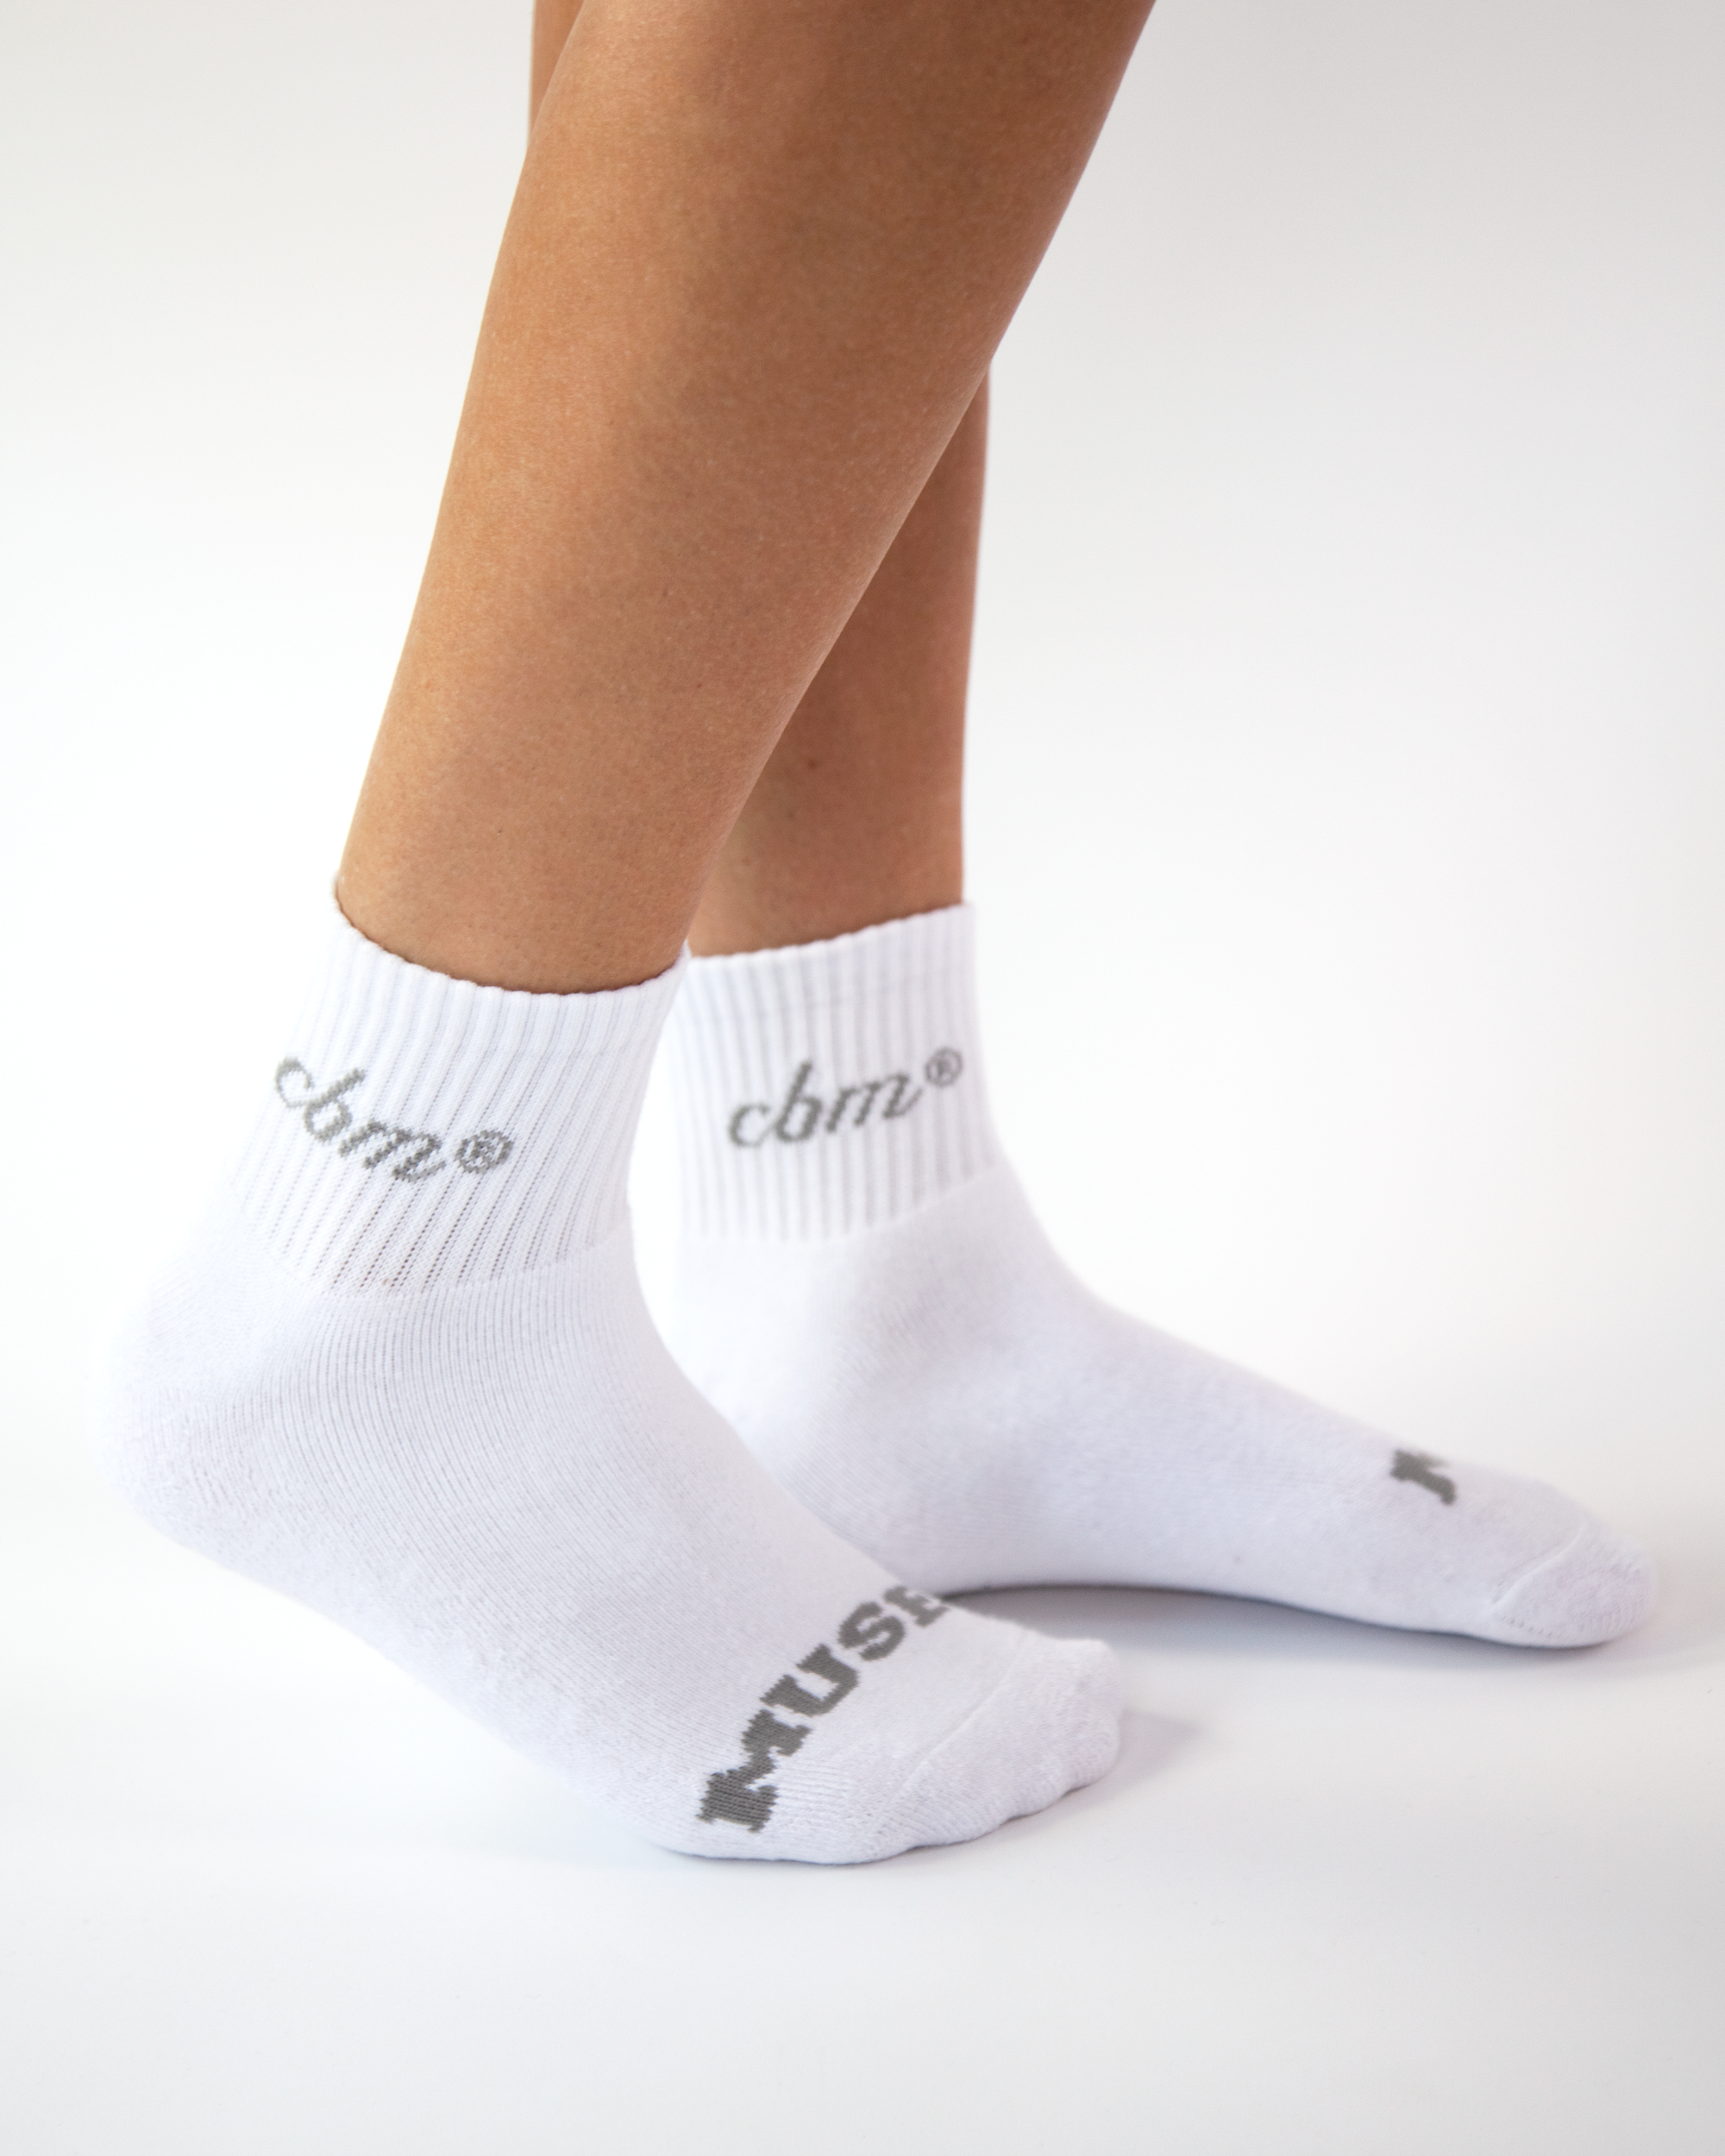 Crew socks 3" - White